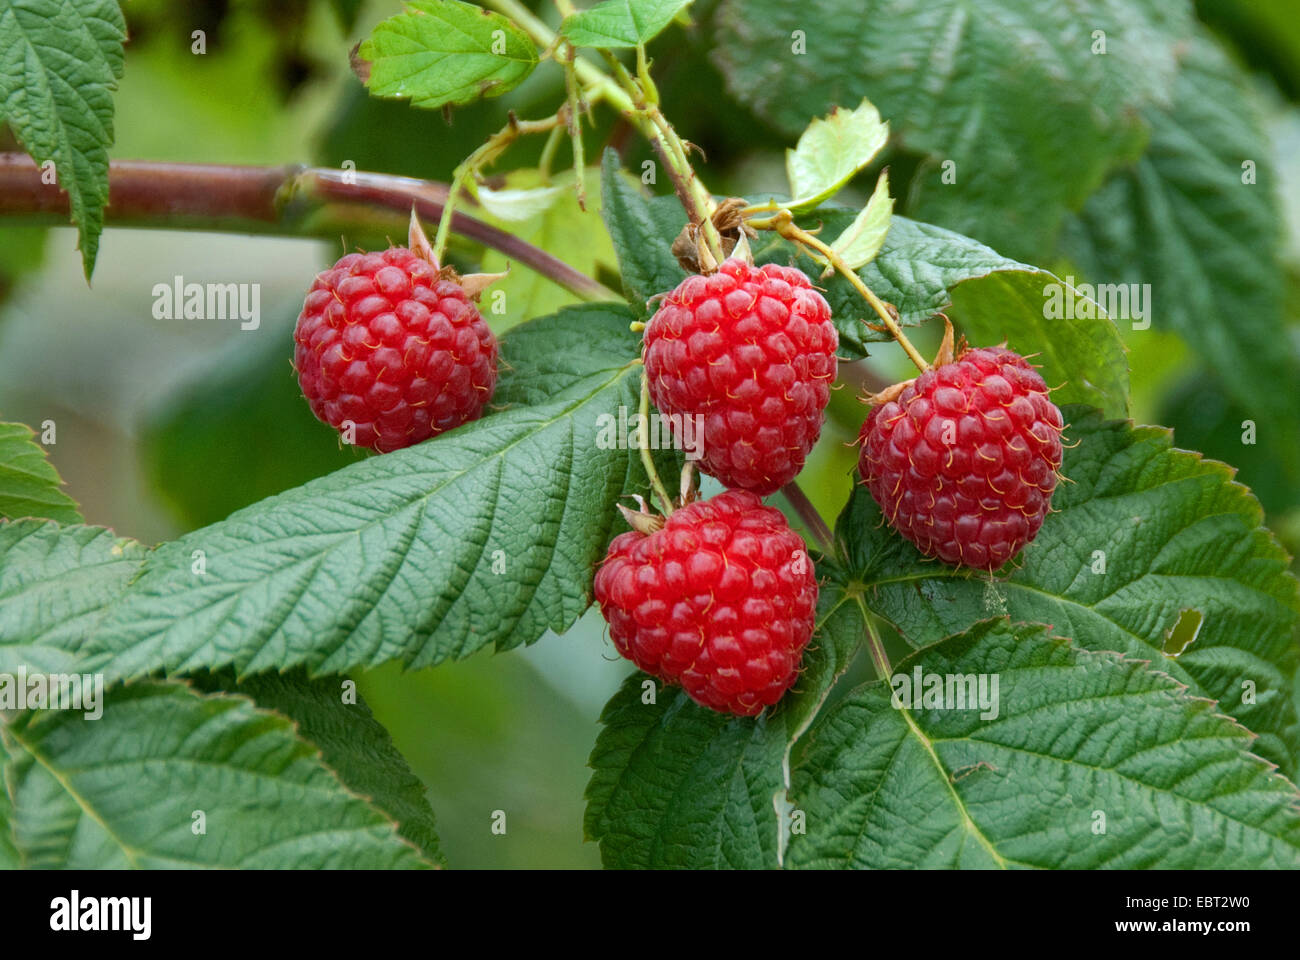 European red raspberry (Rubus idaeus 'Himbotop', Rubus idaeus Himbotop), cultivar Himbotop Stock Photo